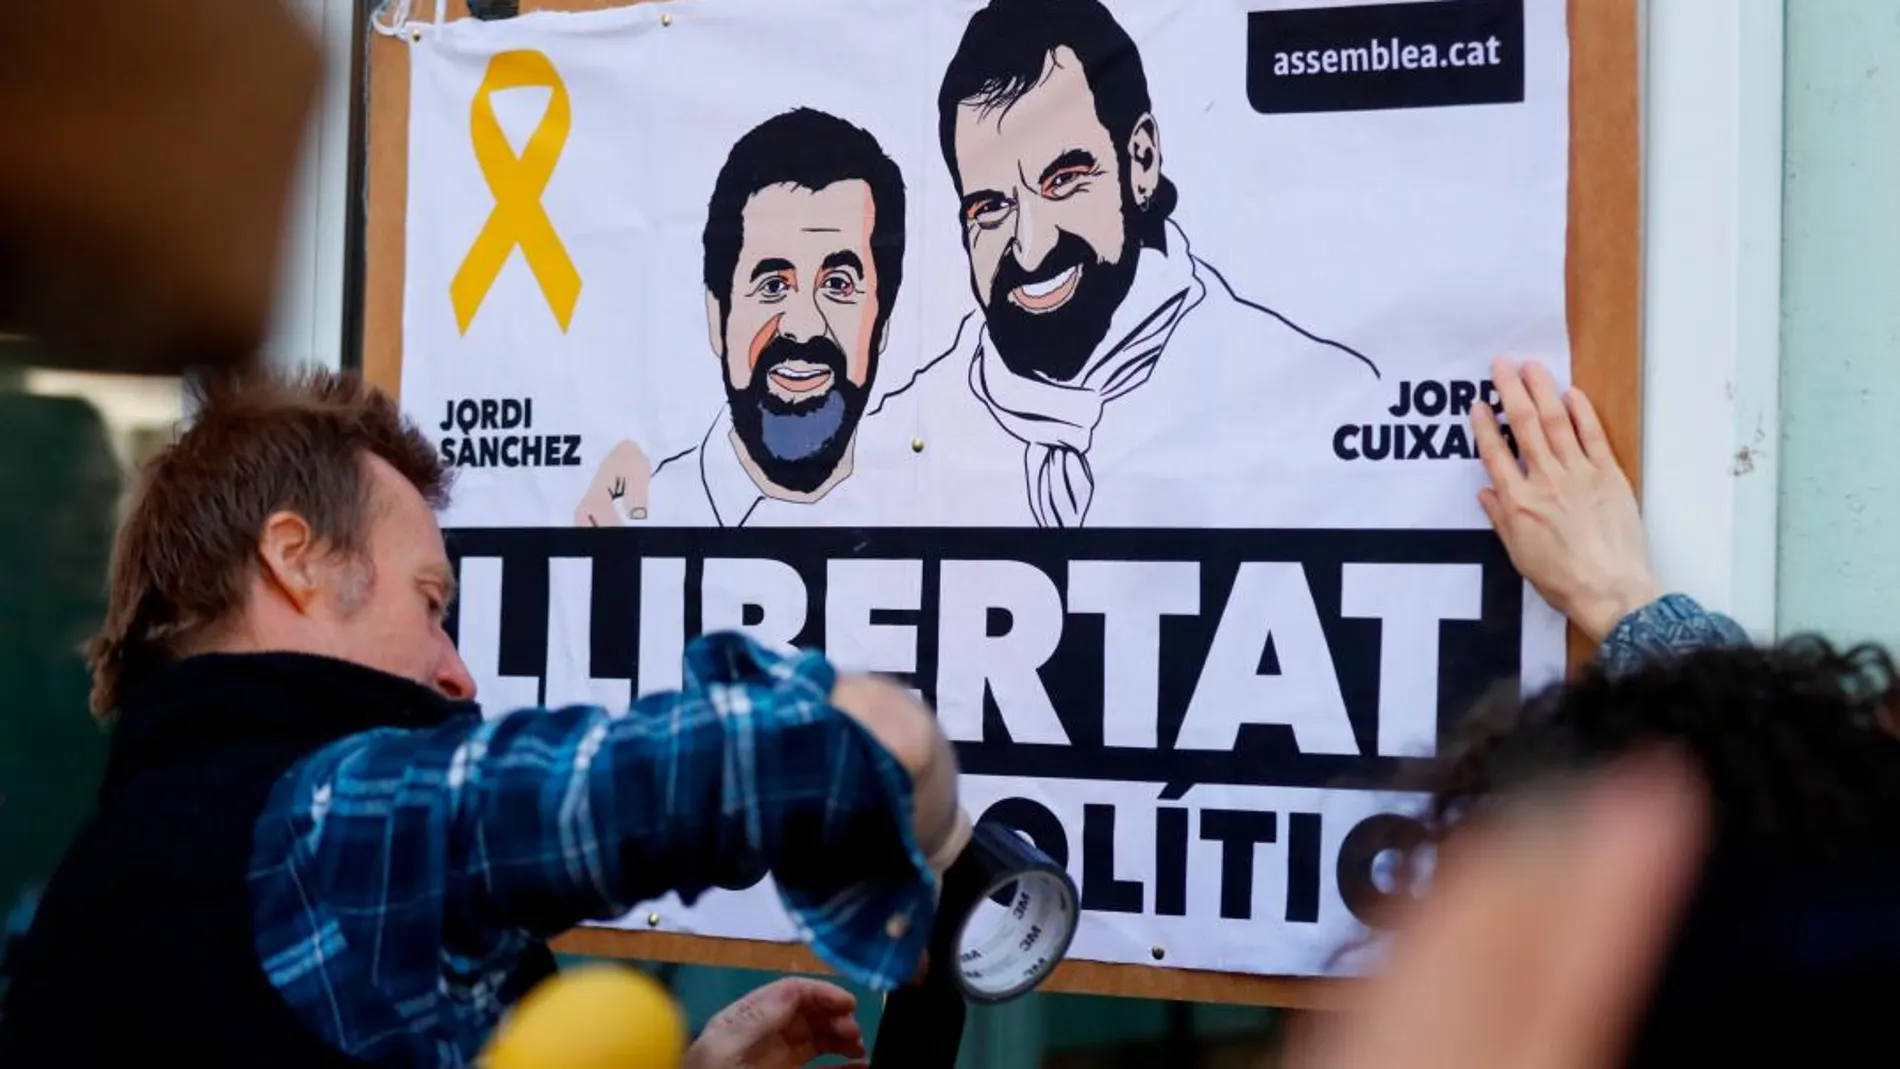 Un cartel pide la libertad de Jordi Sánchez y Jordi Cuixart